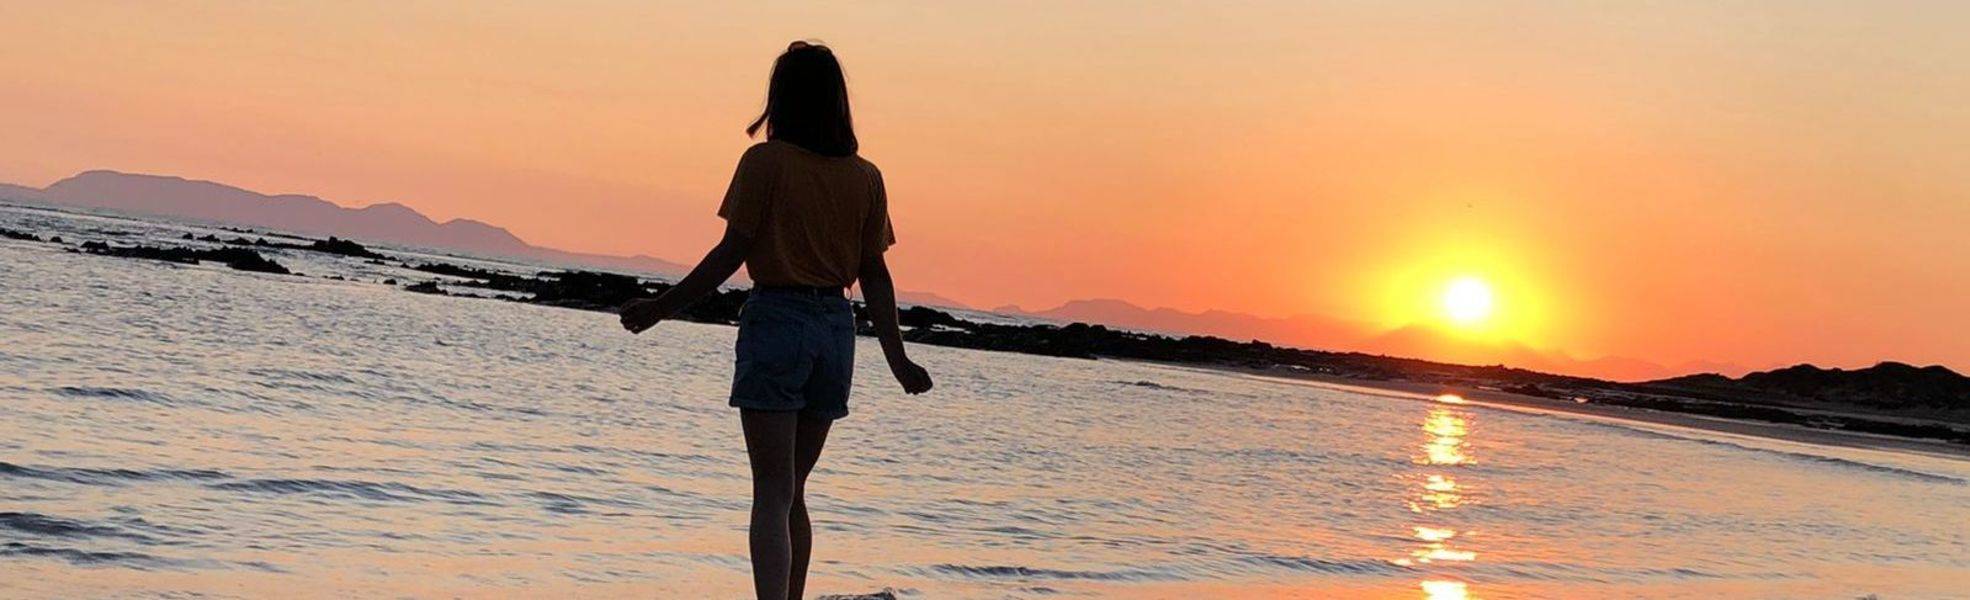 Junge Frau am Strand bei Sonnenuntergang – Unsere FAQs zur Freiwilligenarbeit im Ausland